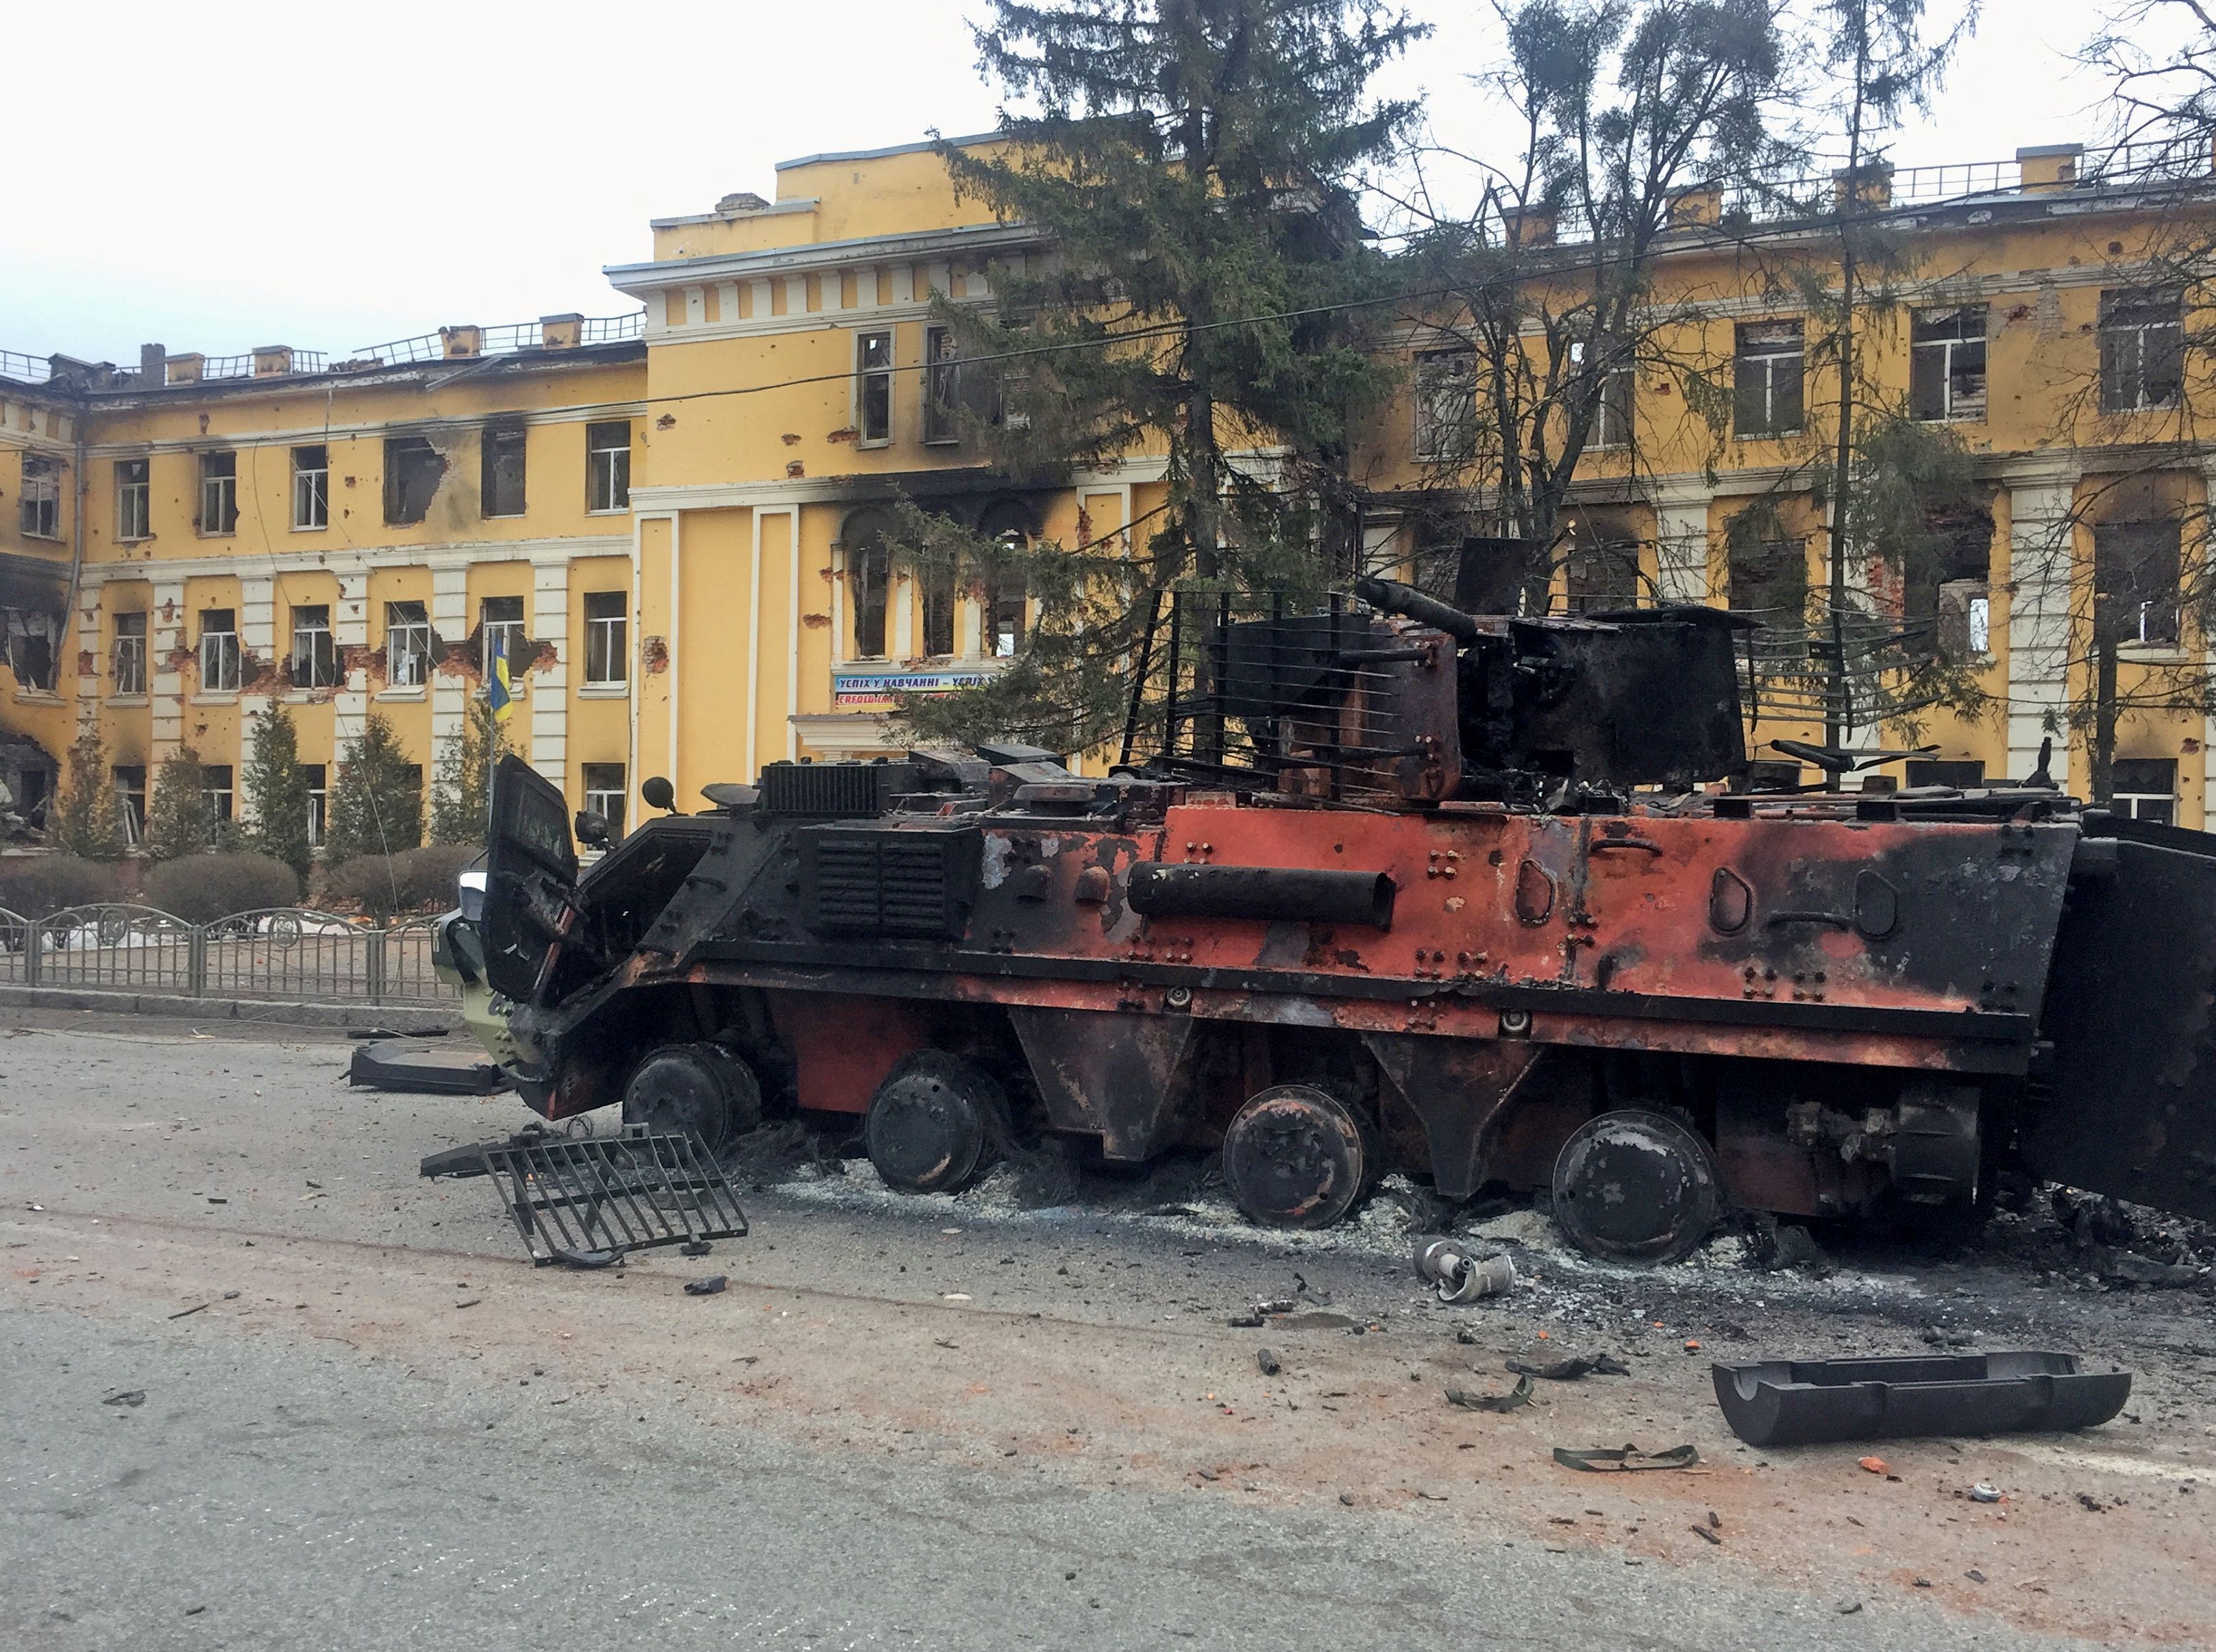 Un vehículo ucraniano de transporte de personal blindado destruido se ve delante de una escuela que, según los residentes locales, estaba en llamas después de los bombardeos, mientras la invasión de Rusia de Ucrania continúa, en Kharkiv, Ucrania 28 de febrero de 2022. REUTERS/Vitaliy Gnidyi
